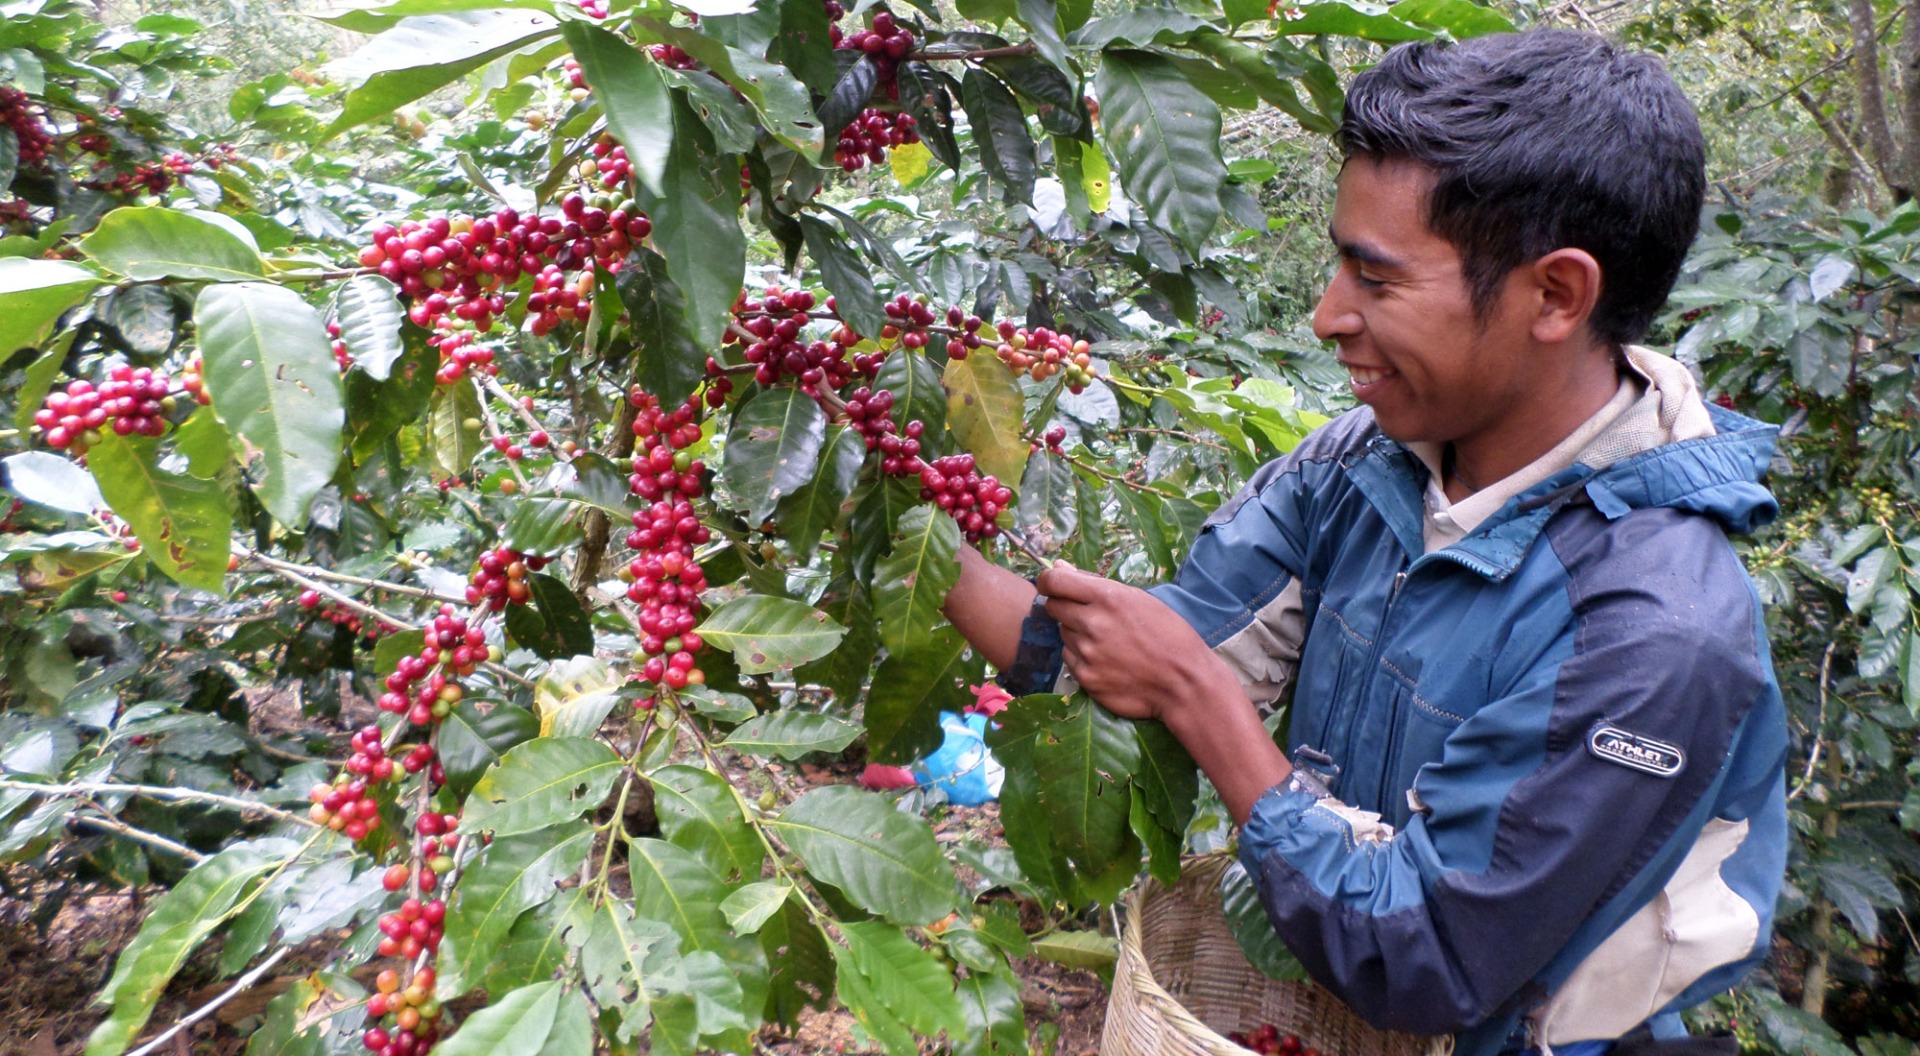 Coffee Cherry picking in Honduras